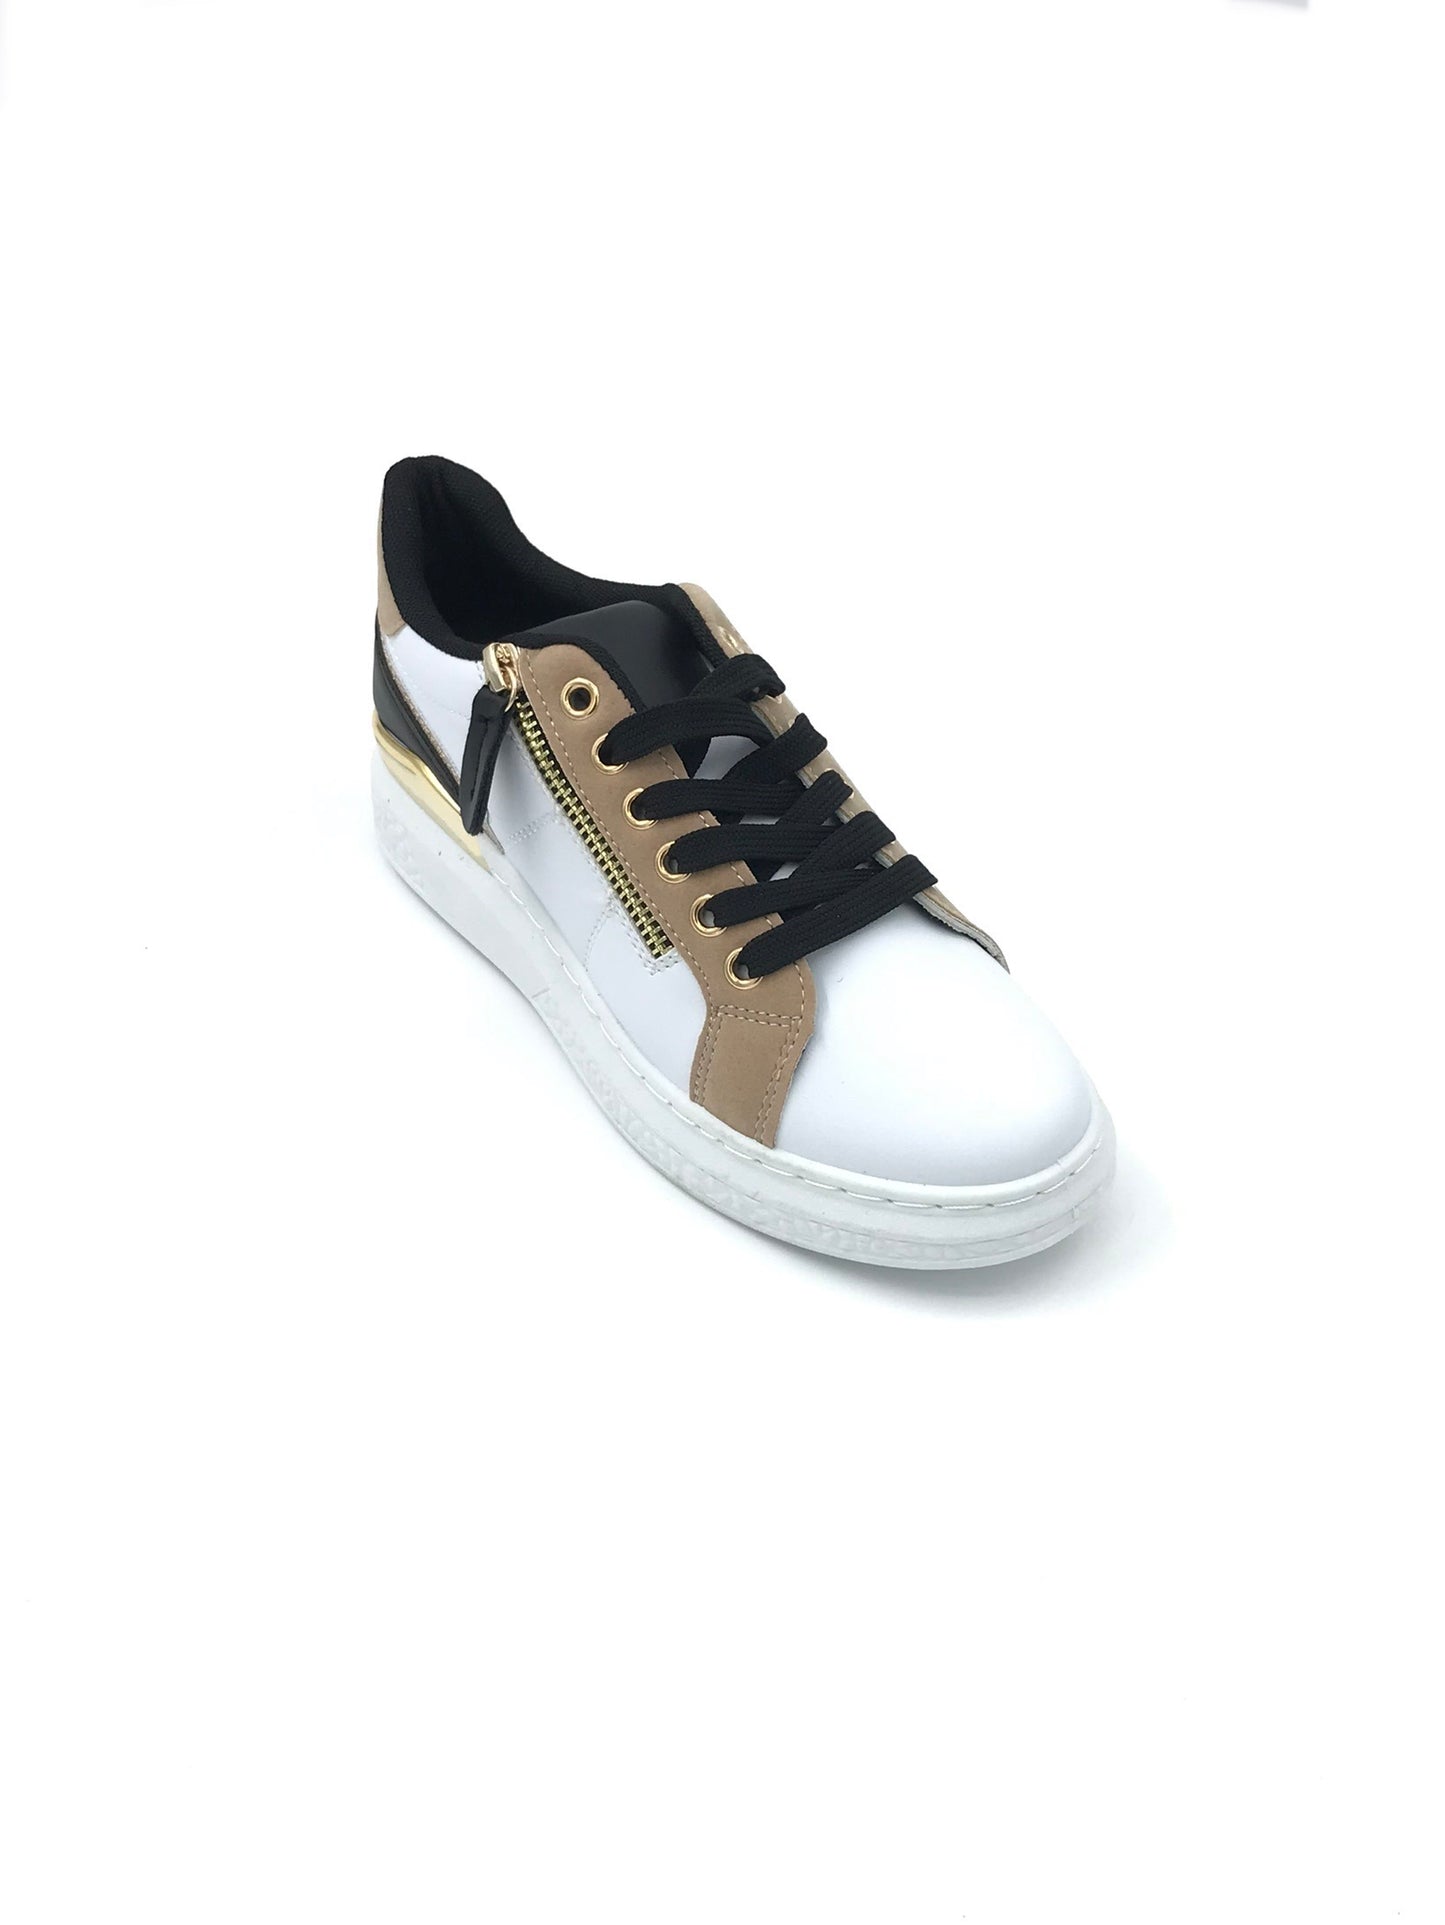 Sneakers dettaglio oro - Scarpe - Stilosa